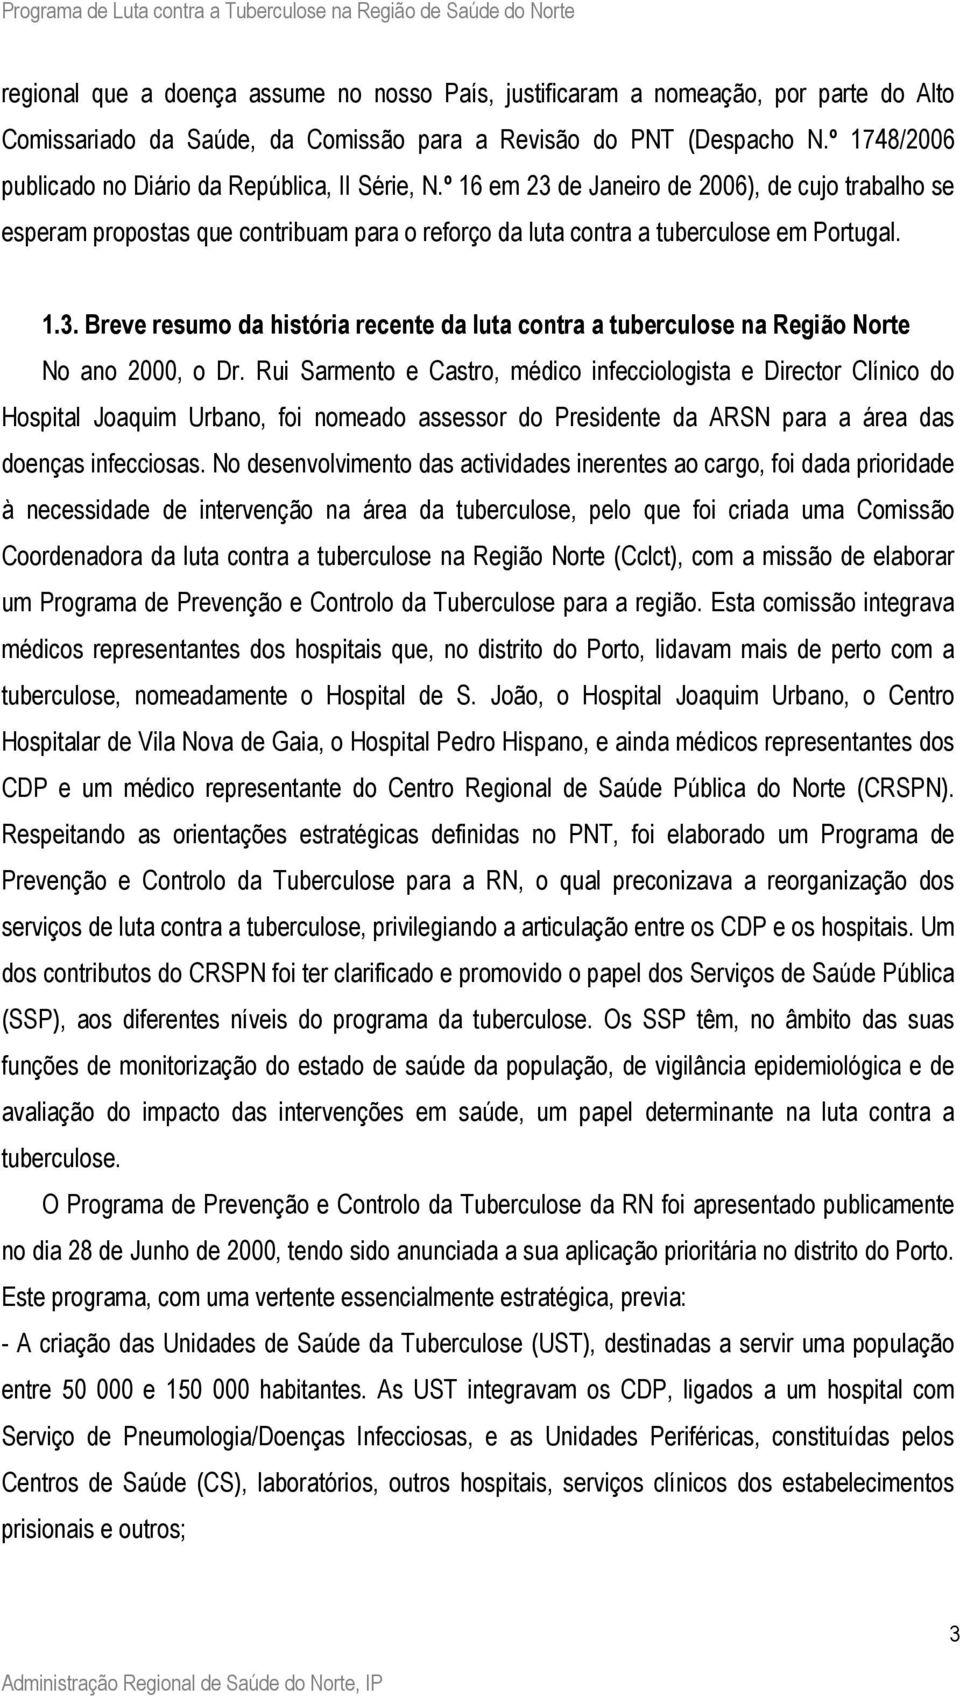 Rui Sarmento e Castro, médico infecciologista e Director Clínico do Hospital Joaquim Urbano, foi nomeado assessor do Presidente da ARSN para a área das doenças infecciosas.